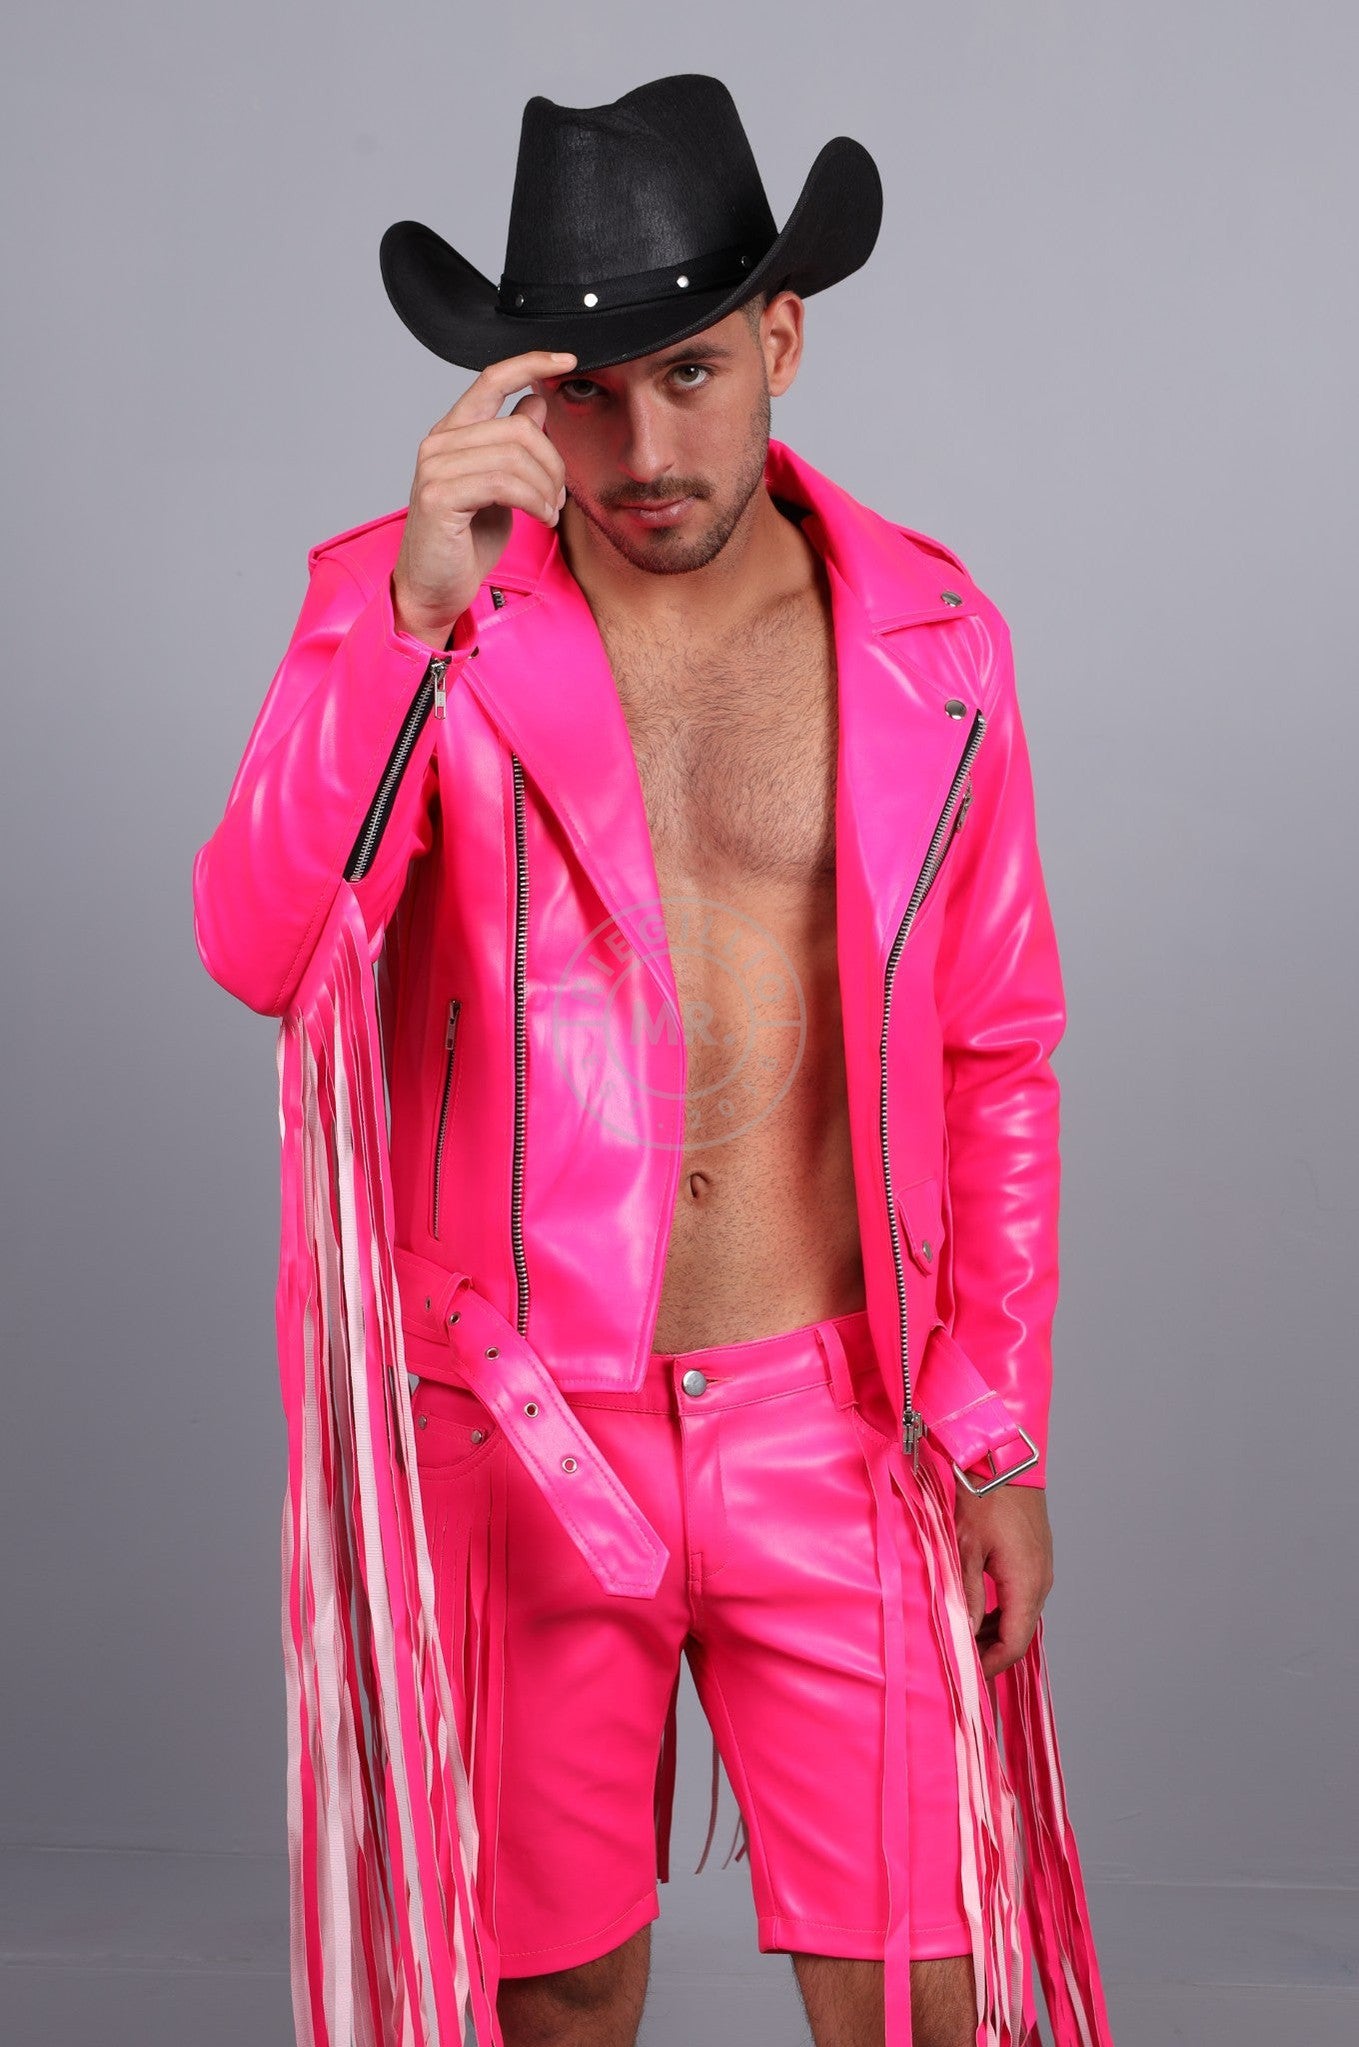 MR. Fringe Biker Jacket - Neon Pink at MR. Riegillio